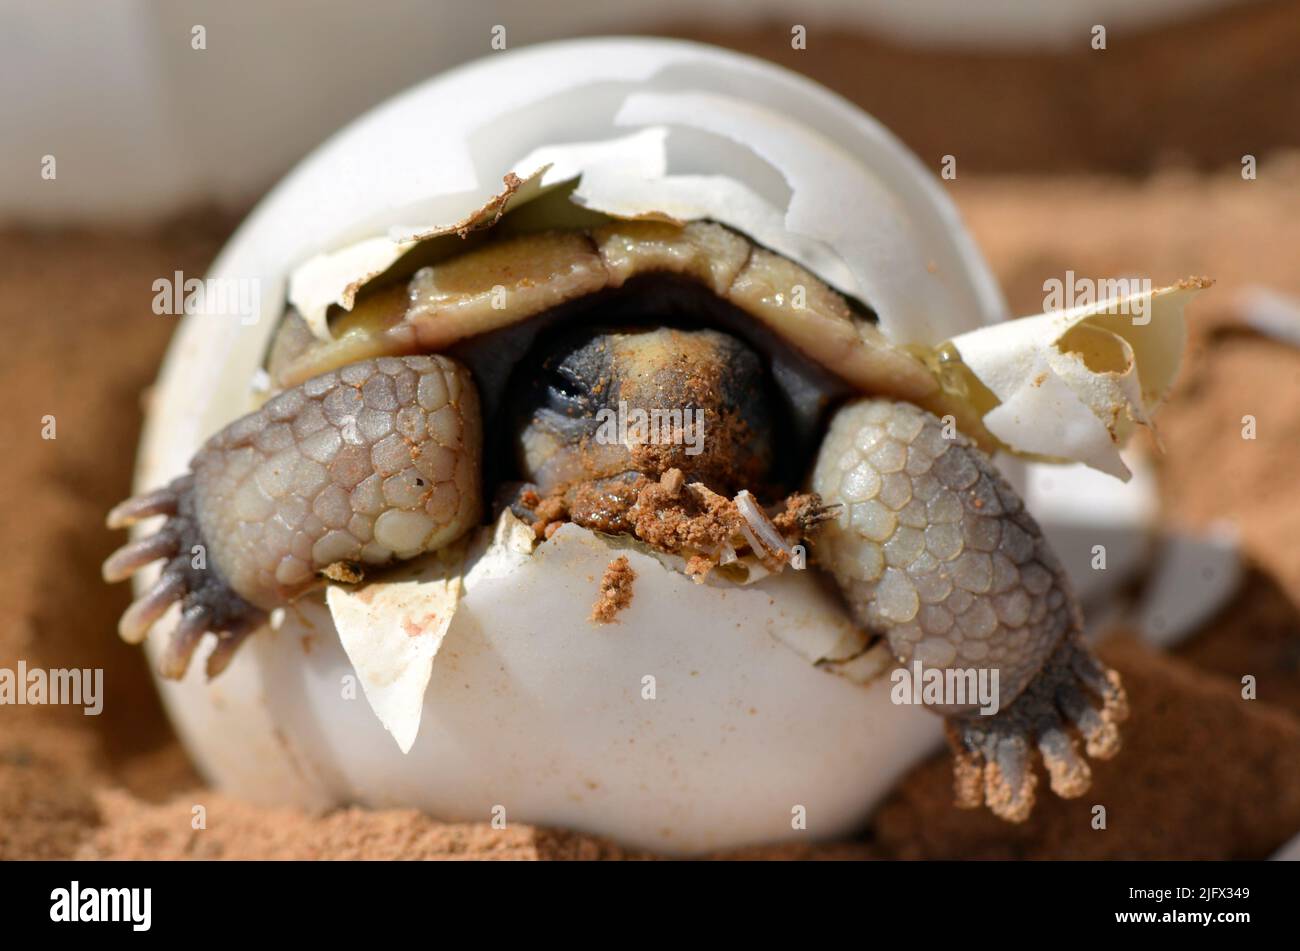 Die kleine Wüstenschildkröte (Gopherus agassizii) schlüpft aus ihrem Ei. Wissenschaftler untersuchen die Lebensgeschichte und Ökologie der Wüstenschildkröte, eine staatlich gelistete, bedrohte Art, die nur in der Mojave-Wüste zu finden ist.Junge Schildkröten sind besonders anfällig für Raubtiere wie Hunde und Raben, deren Zahl um Bereiche menschlicher Aktivität und Strukturen ansteigen kann. Adulte Schildkröten können durch Autoverkehr, Mülleinfuhr und Waldbrände getötet werden und sind durch den Verlust von Lebensraum durch die städtische und industrielle Entwicklung betroffen, was ihre potenzielle Lebensdauer von 100 Jahren einkürzt. Kredit: KK.Drake / USGS Stockfoto